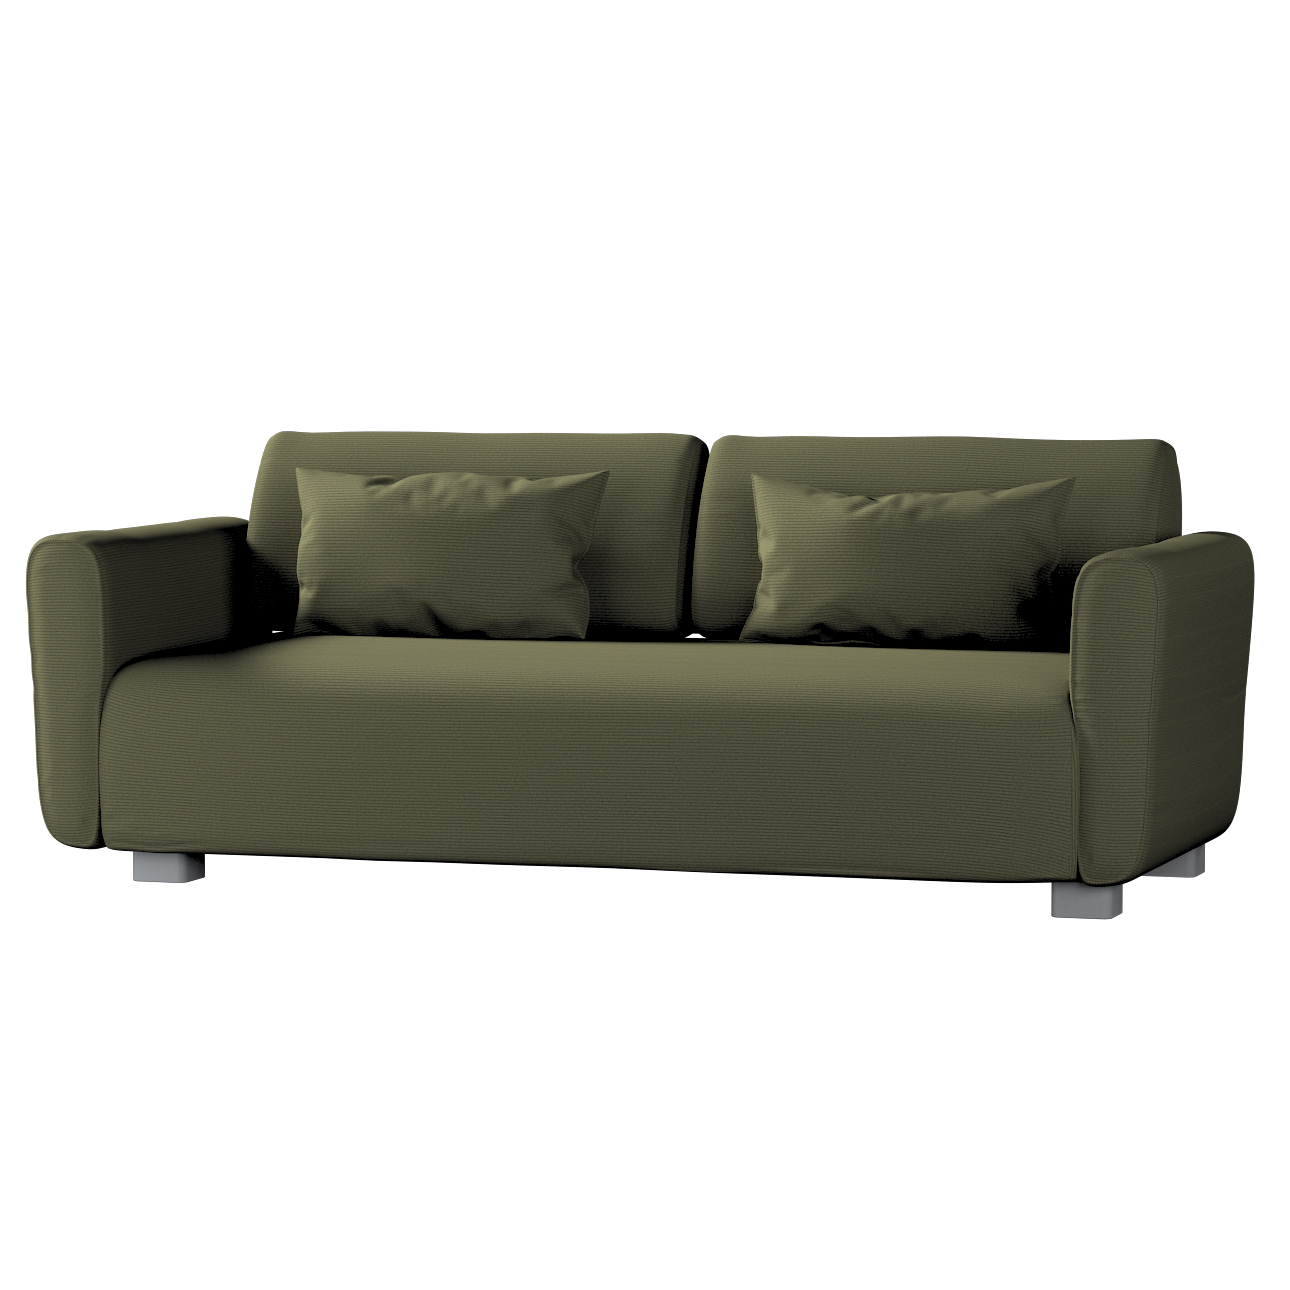 Bezug für Mysinge 2-Sitzer Sofa, olivgrün, Sofabezug Mysinge 2-Sitzer, Manc günstig online kaufen